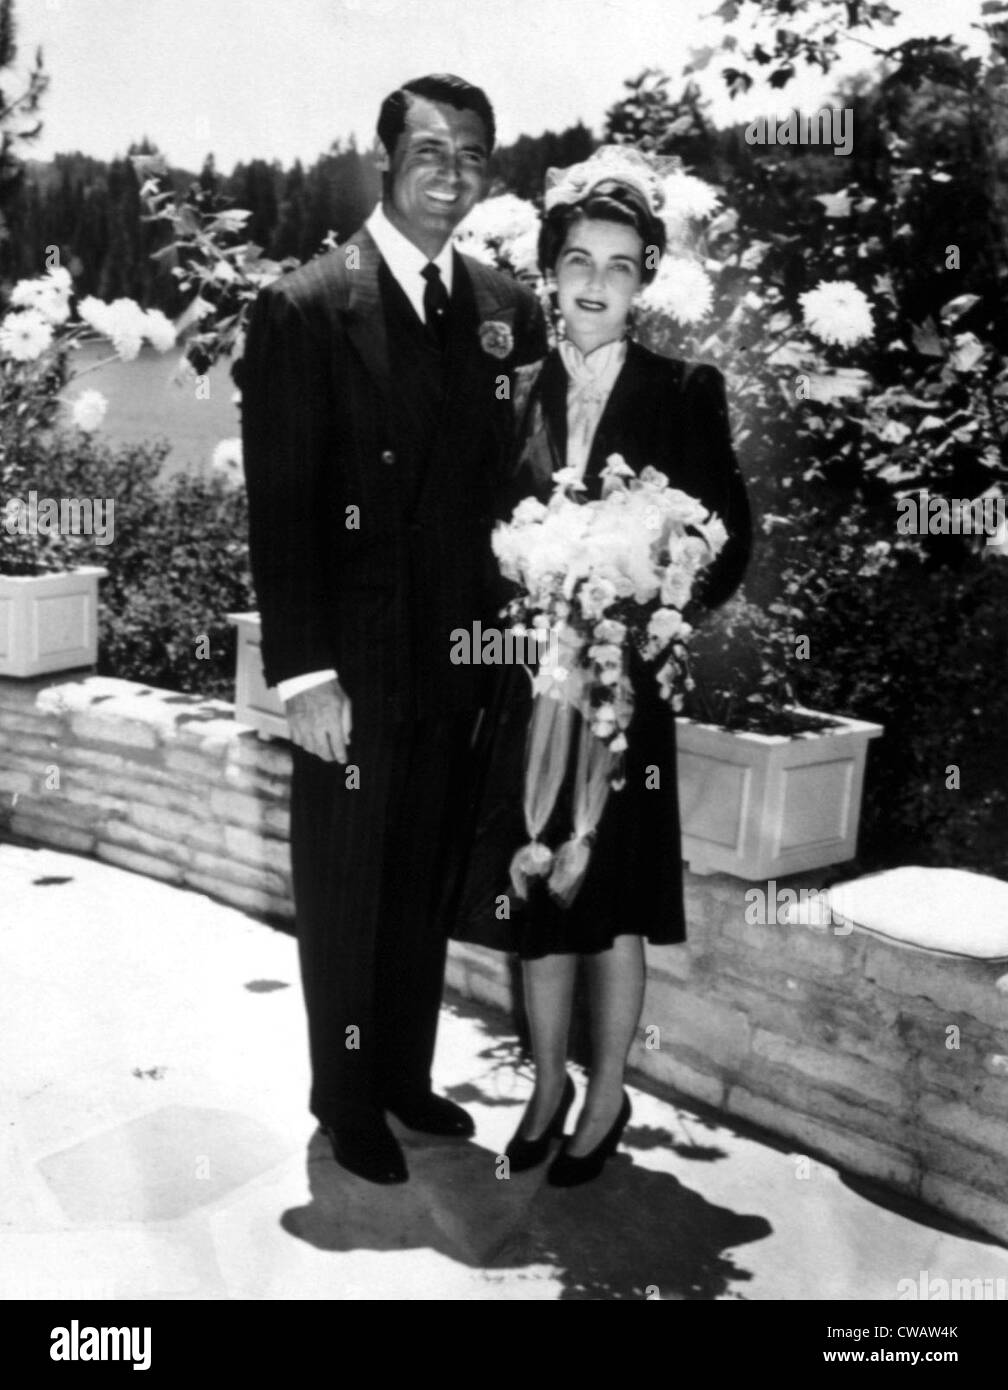 Jeunes mariés, Cary Grant et BARABARA HUTTON heureusement poser pour les caméras, 1942. Avec la permission de la CSU : Archives / Everett Collection Banque D'Images